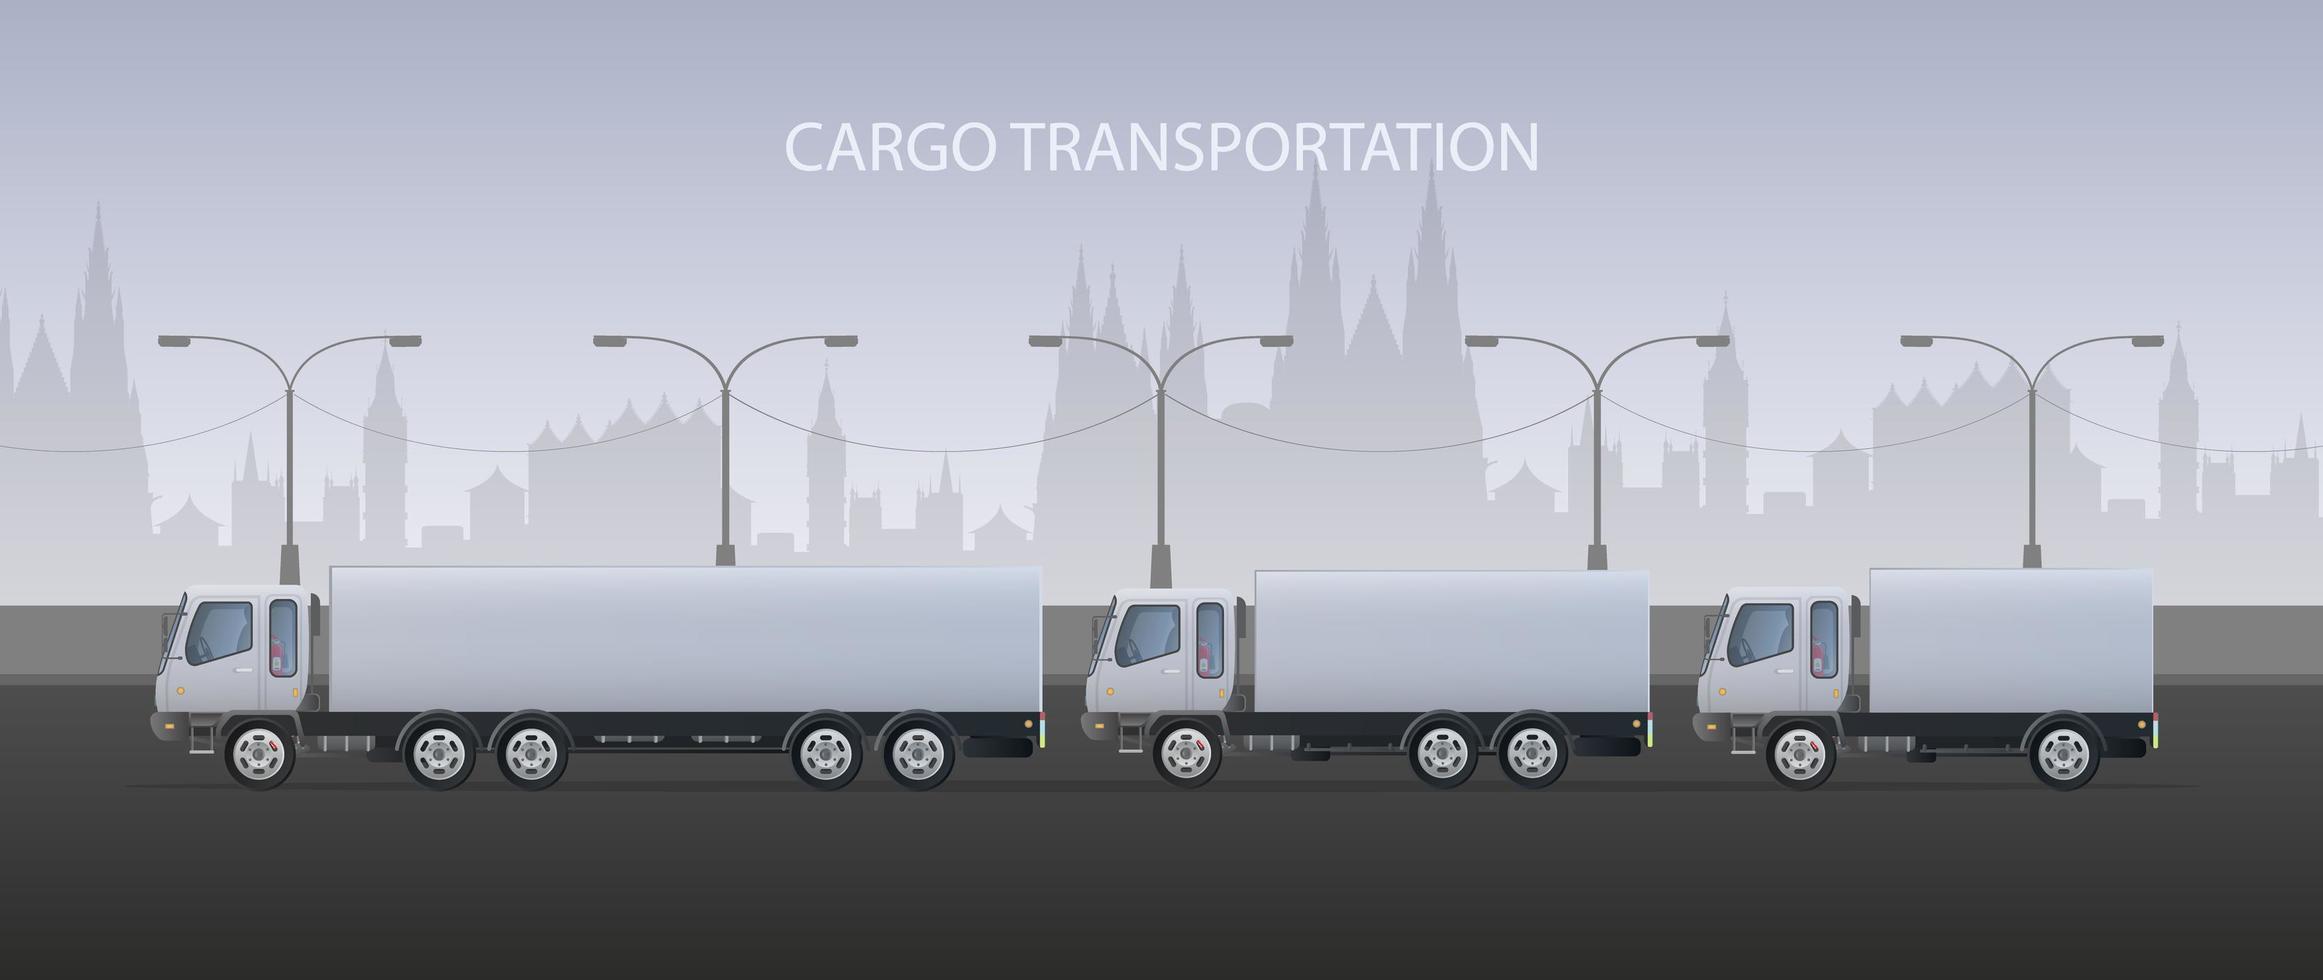 Frachtbanner. großer weißer LKW. das Konzept des Transports, der Lieferung und der Logistik von Waren. Vektor. vektor